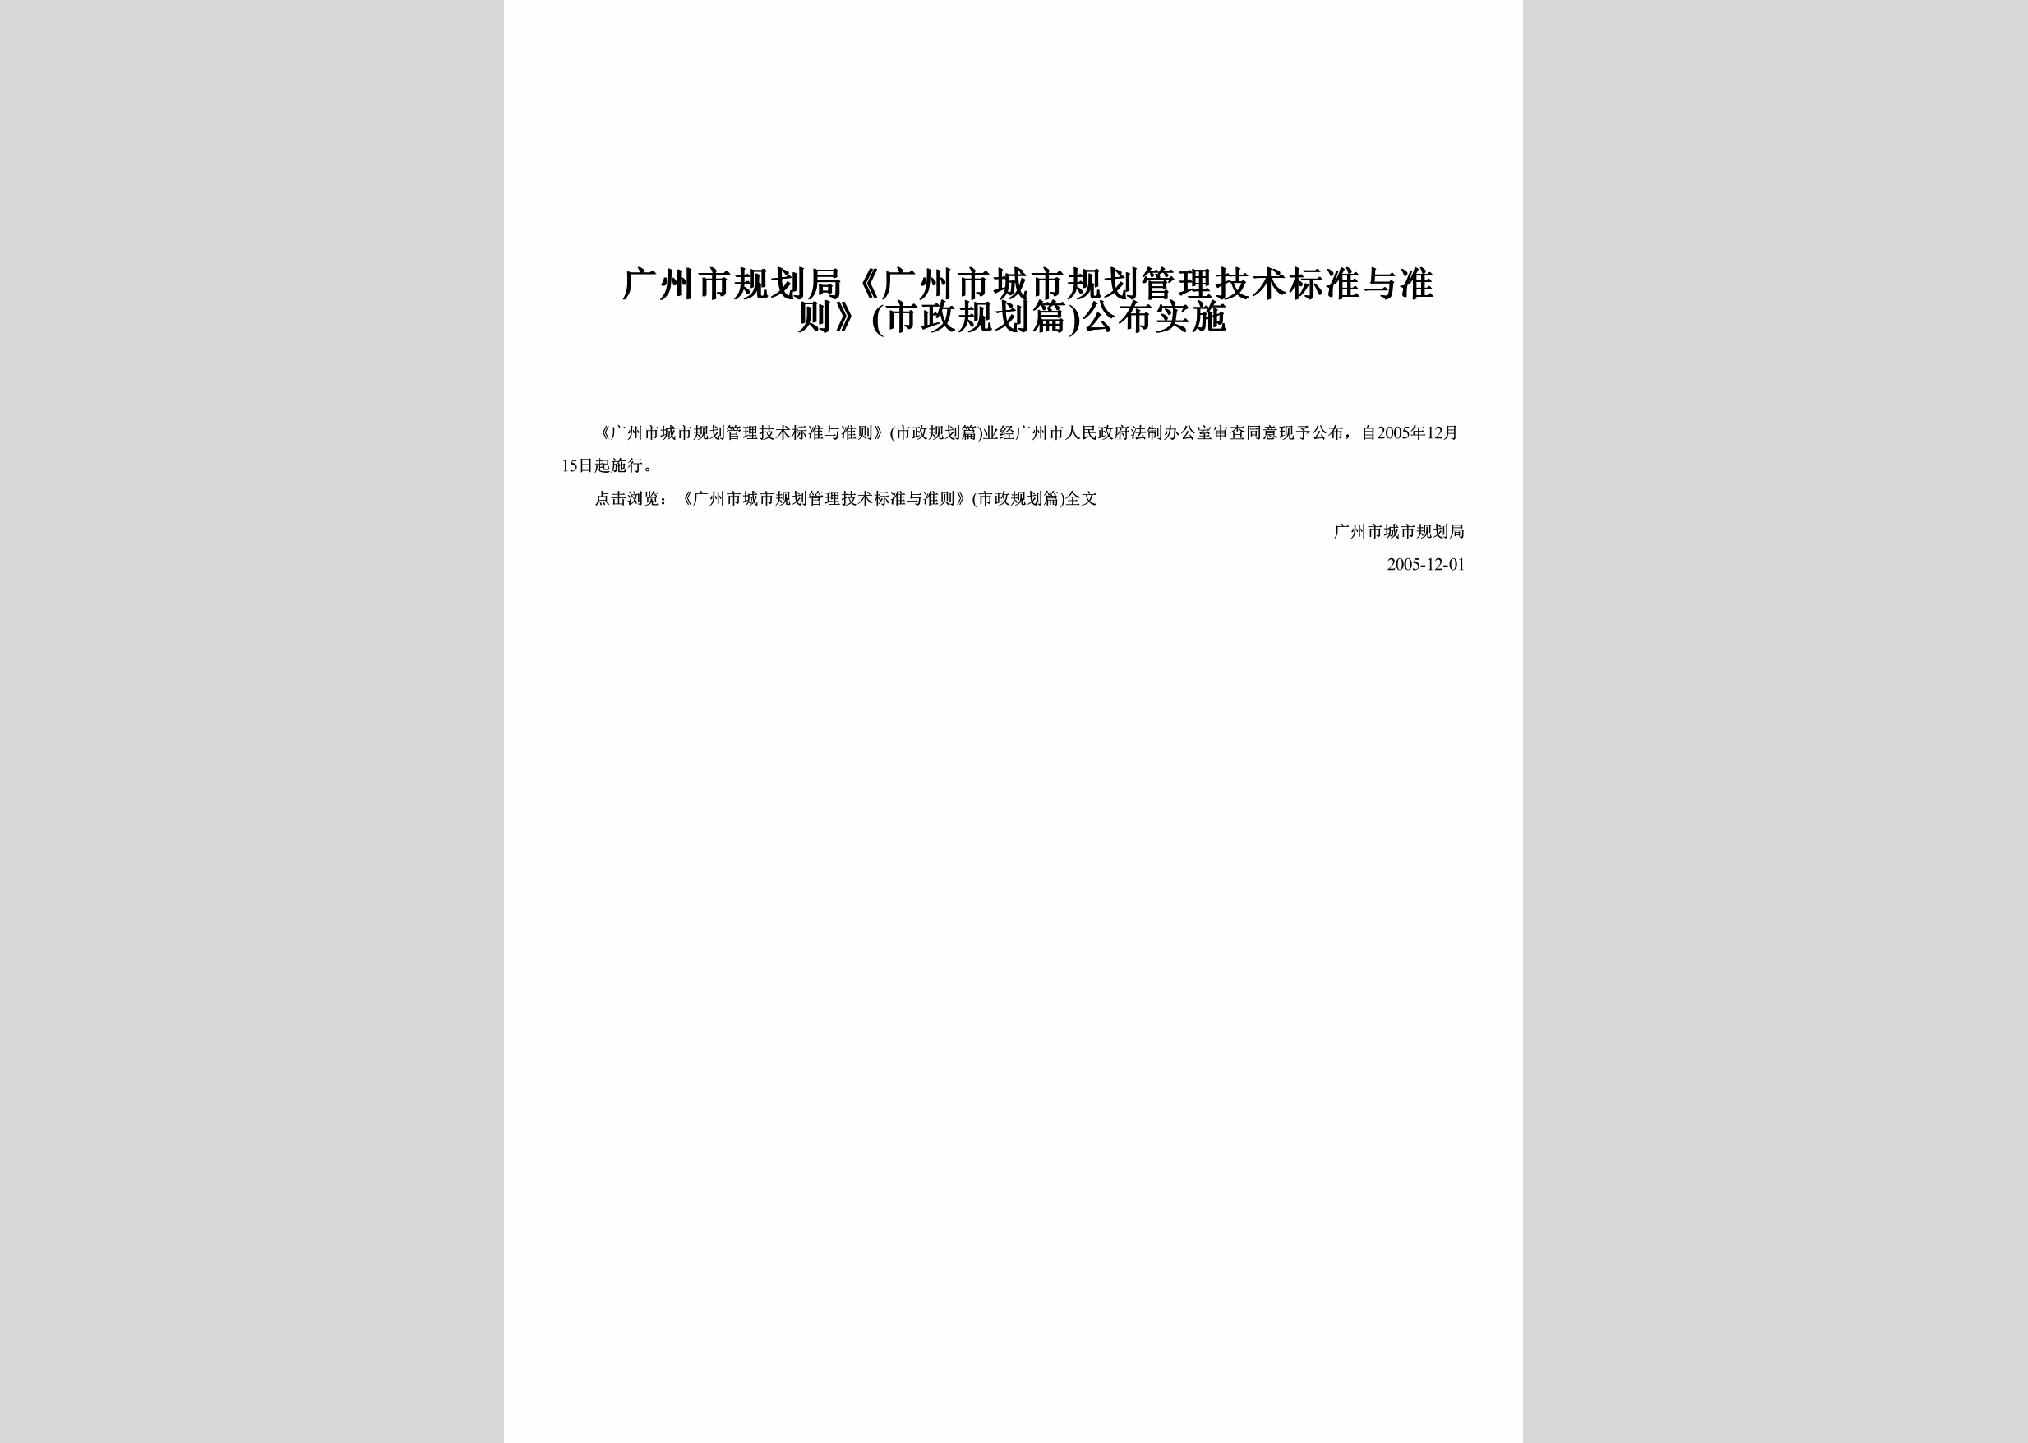 GD-GZSGHGLJ-2005：《广州市城市规划管理技术标准与准则》(市政规划篇)公布实施